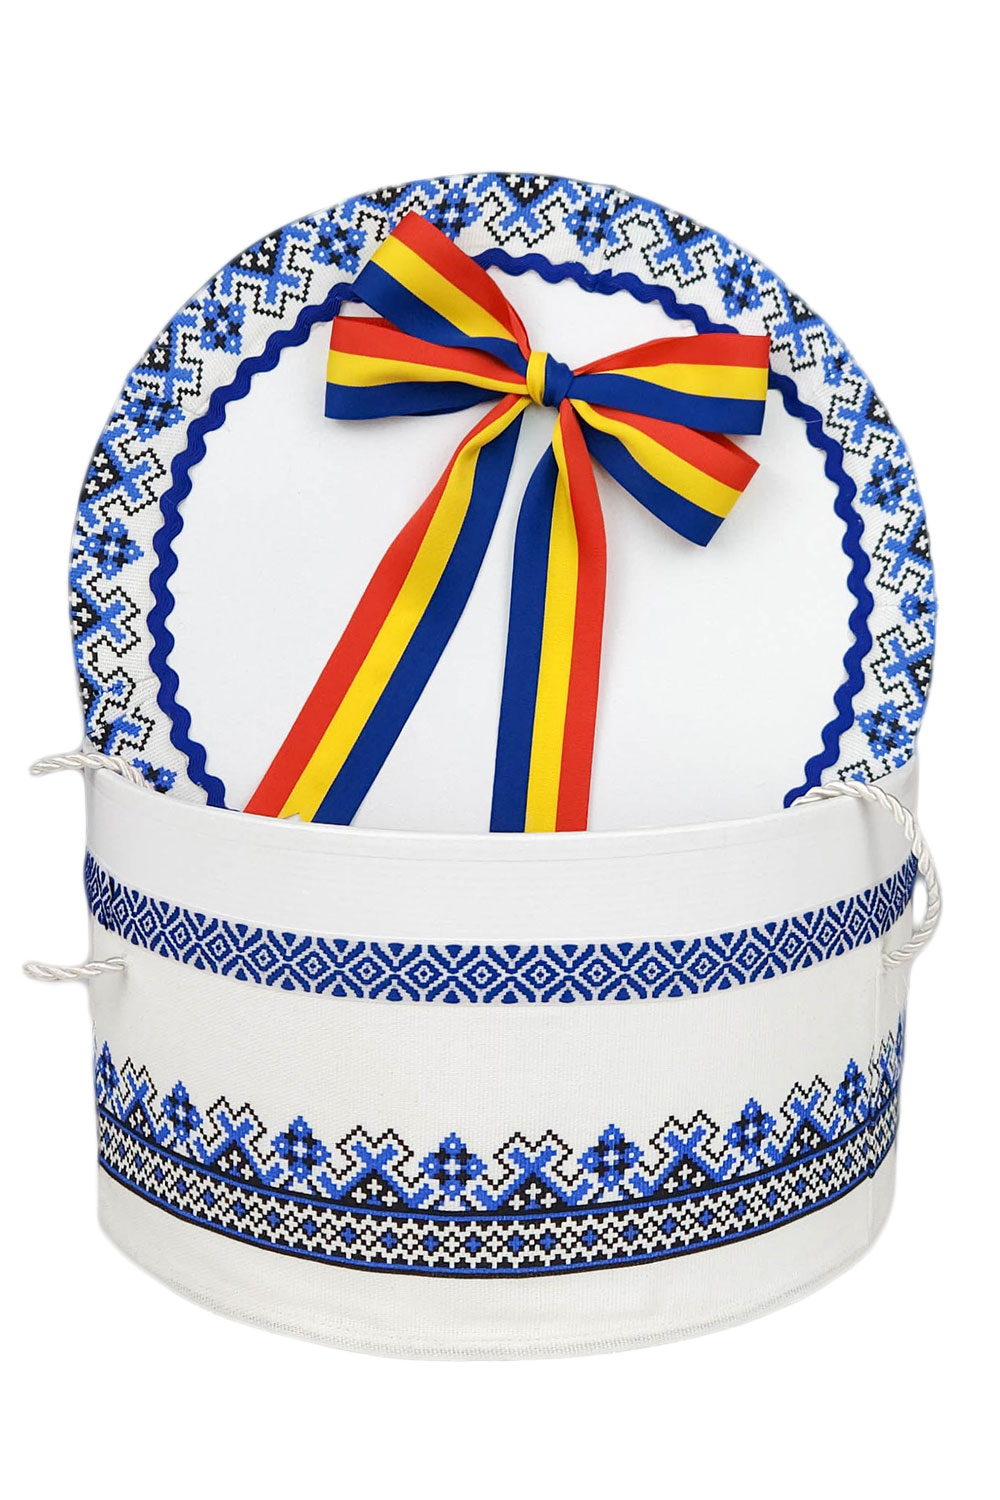 Cutie rotunda pentru trusou, traditionala albastra